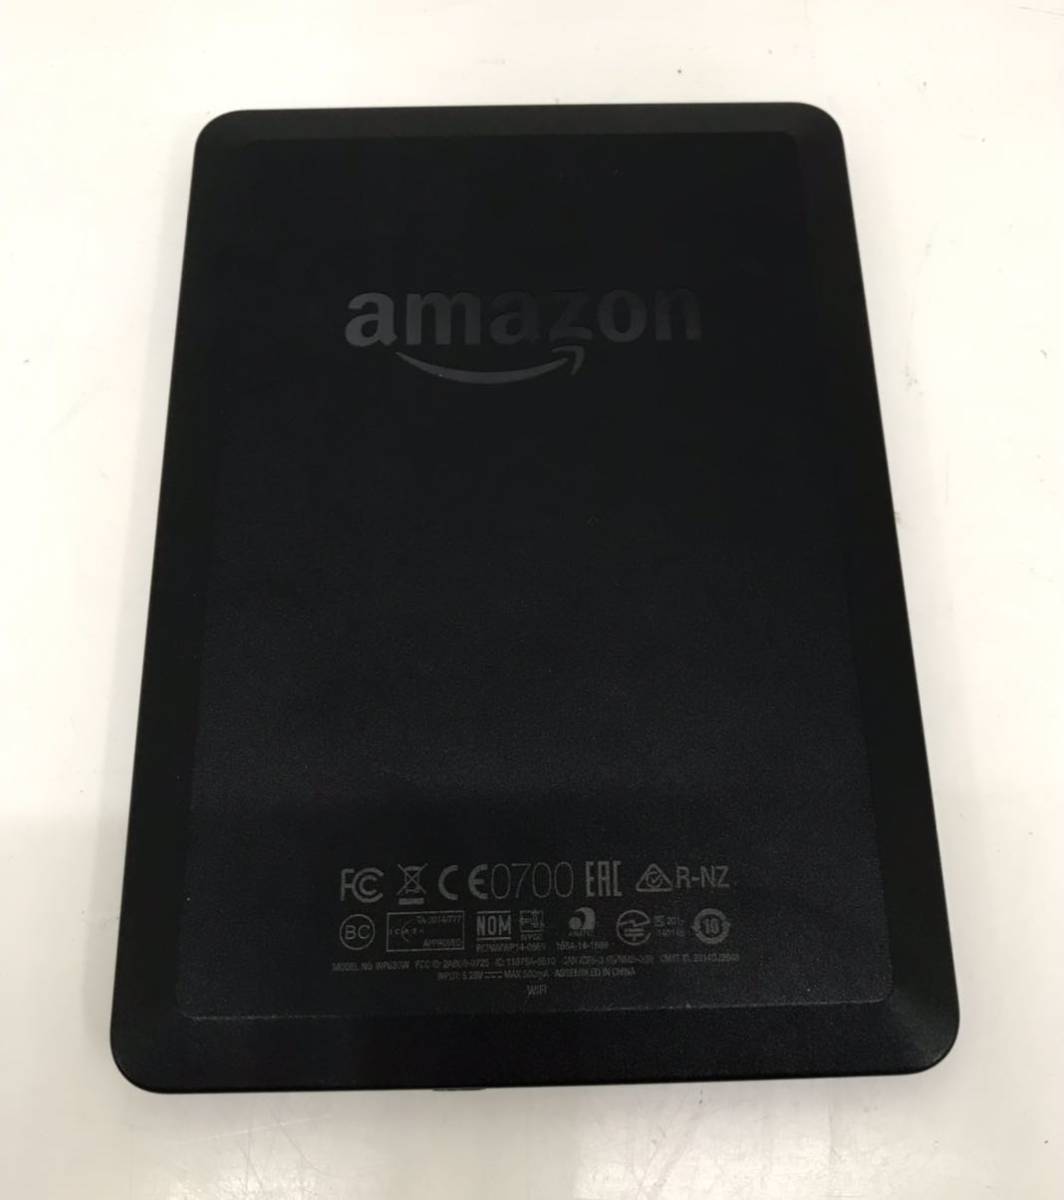 Amazon Kindle WP63GW no. 7 поколение реклама нет черный электронная книга Amazon gold доллар 